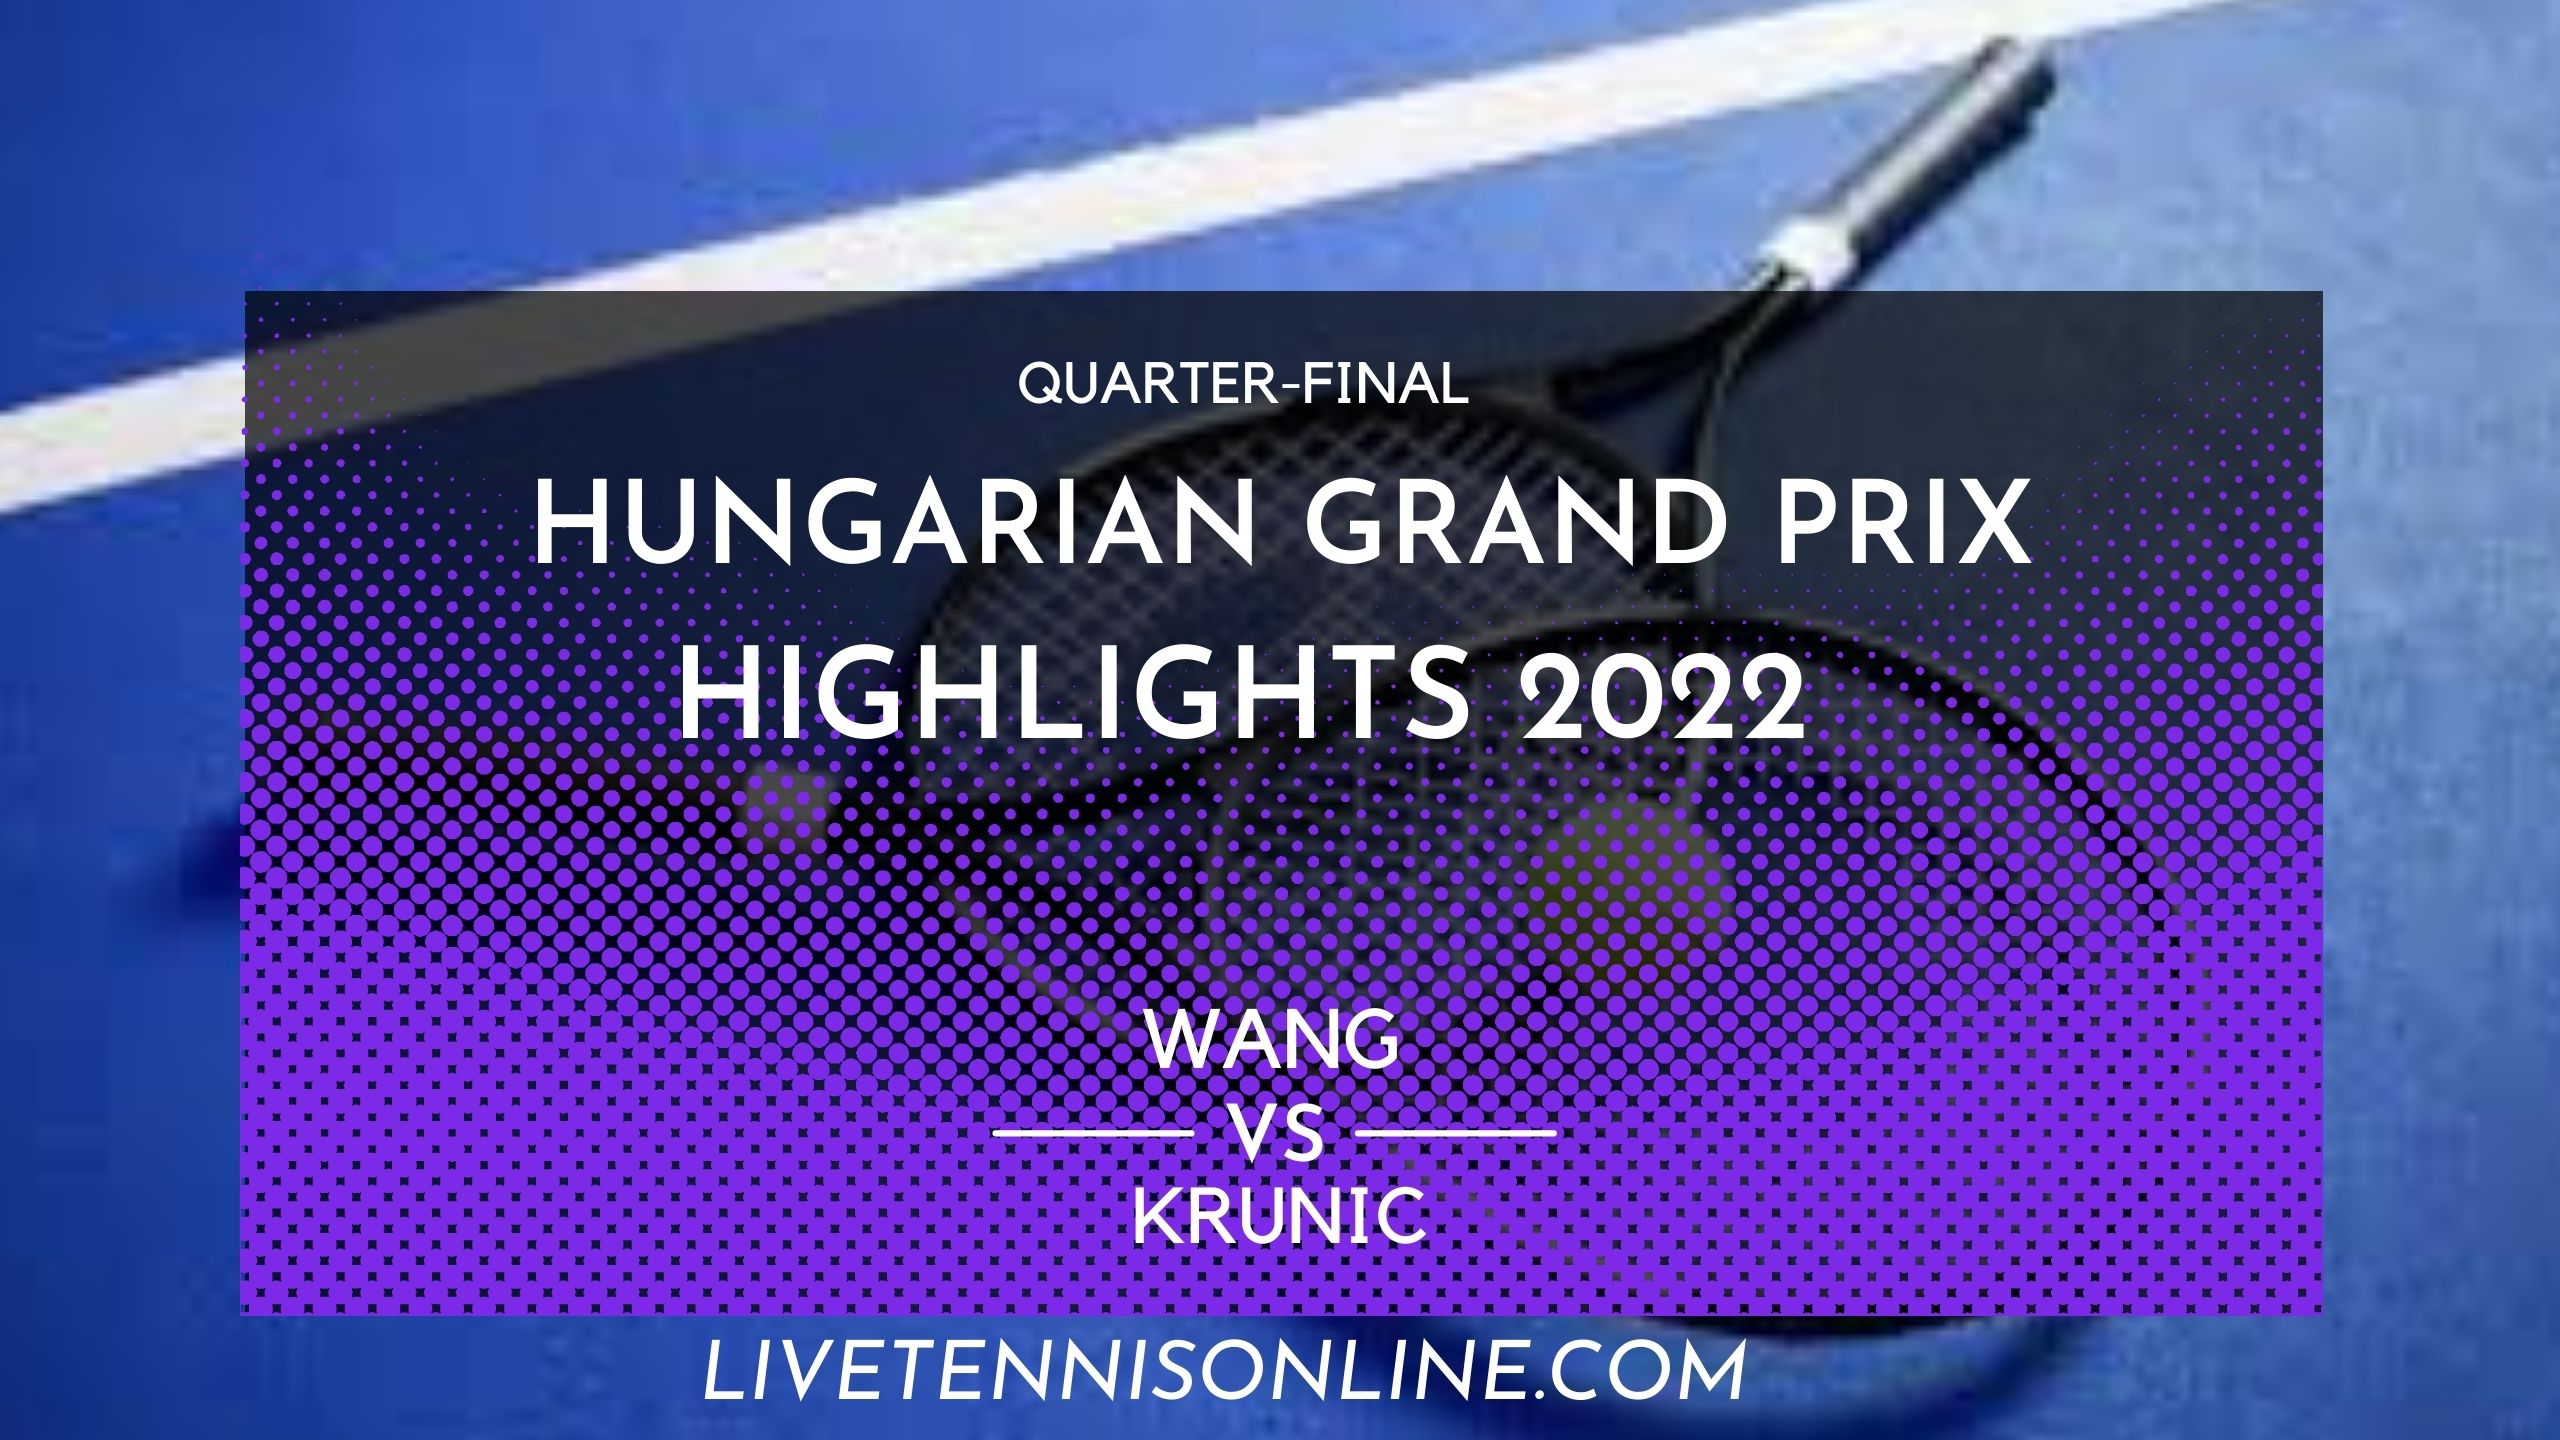 Wang Vs Krunic QF Highlights 2022 Hungarian Grand Prix